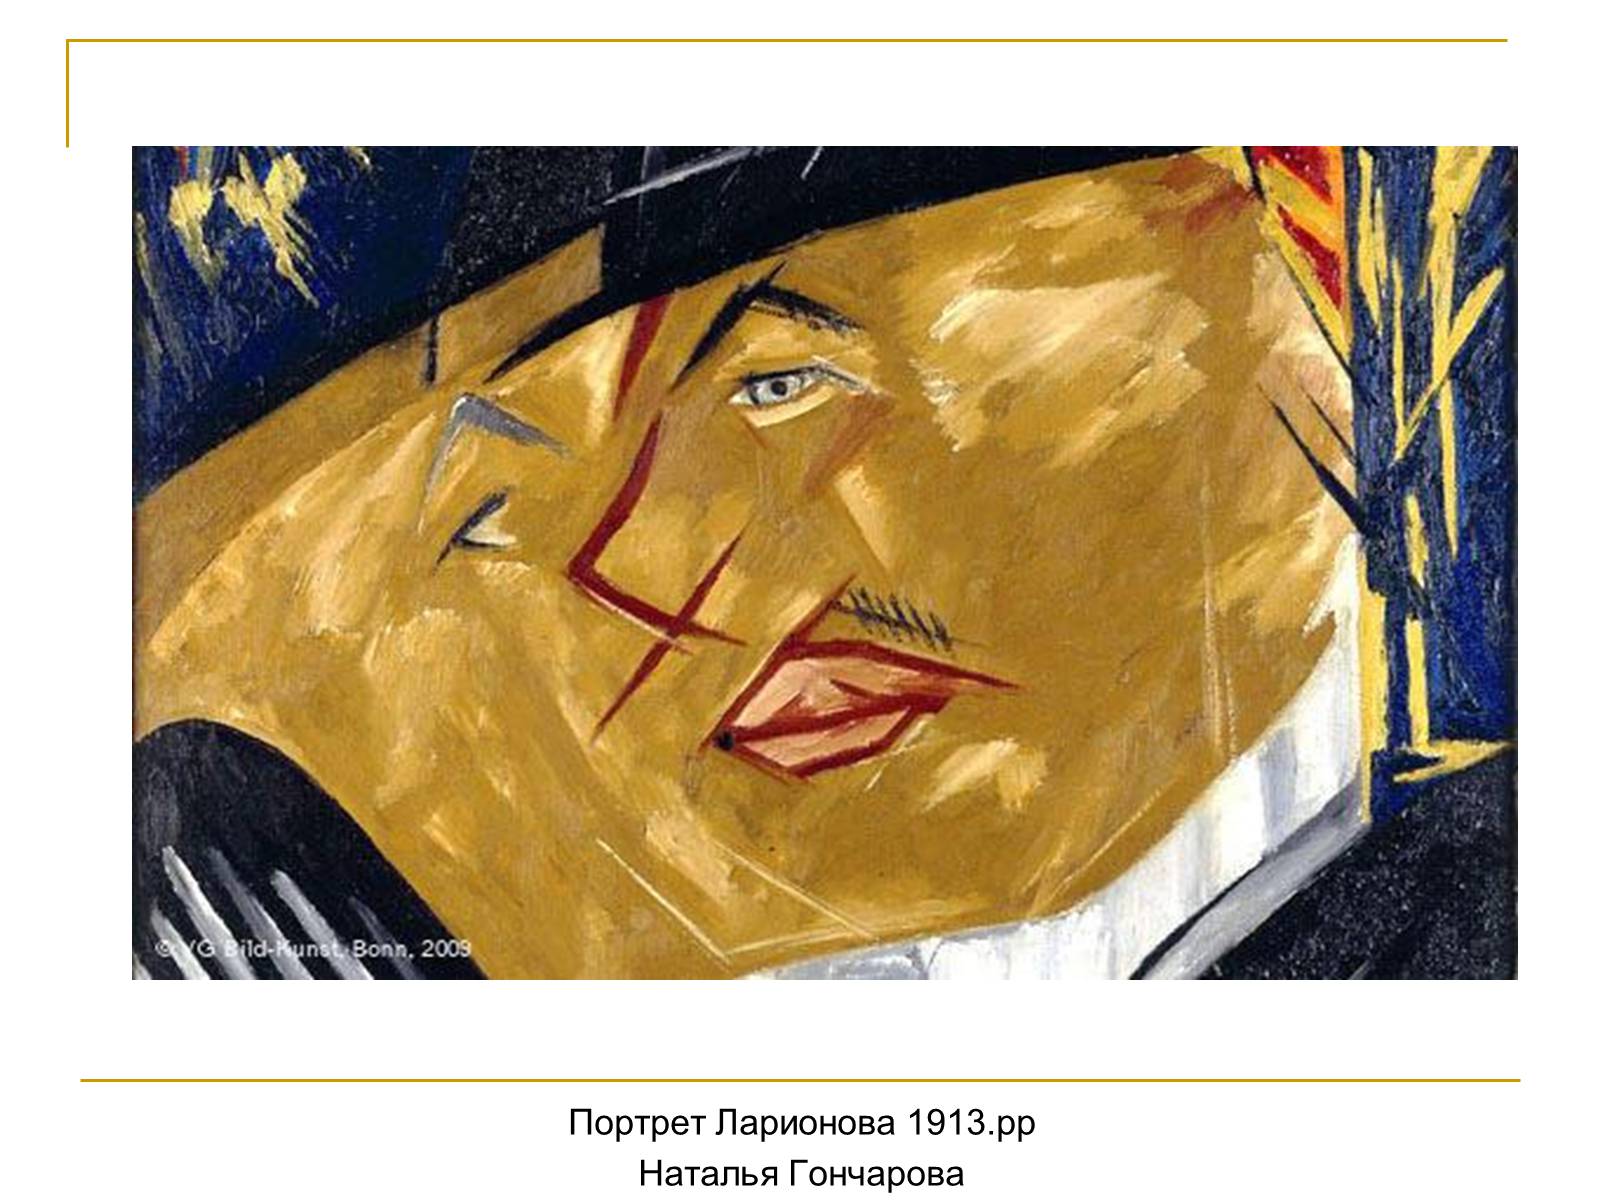 Гончарова портрет Ларионова Лучизм